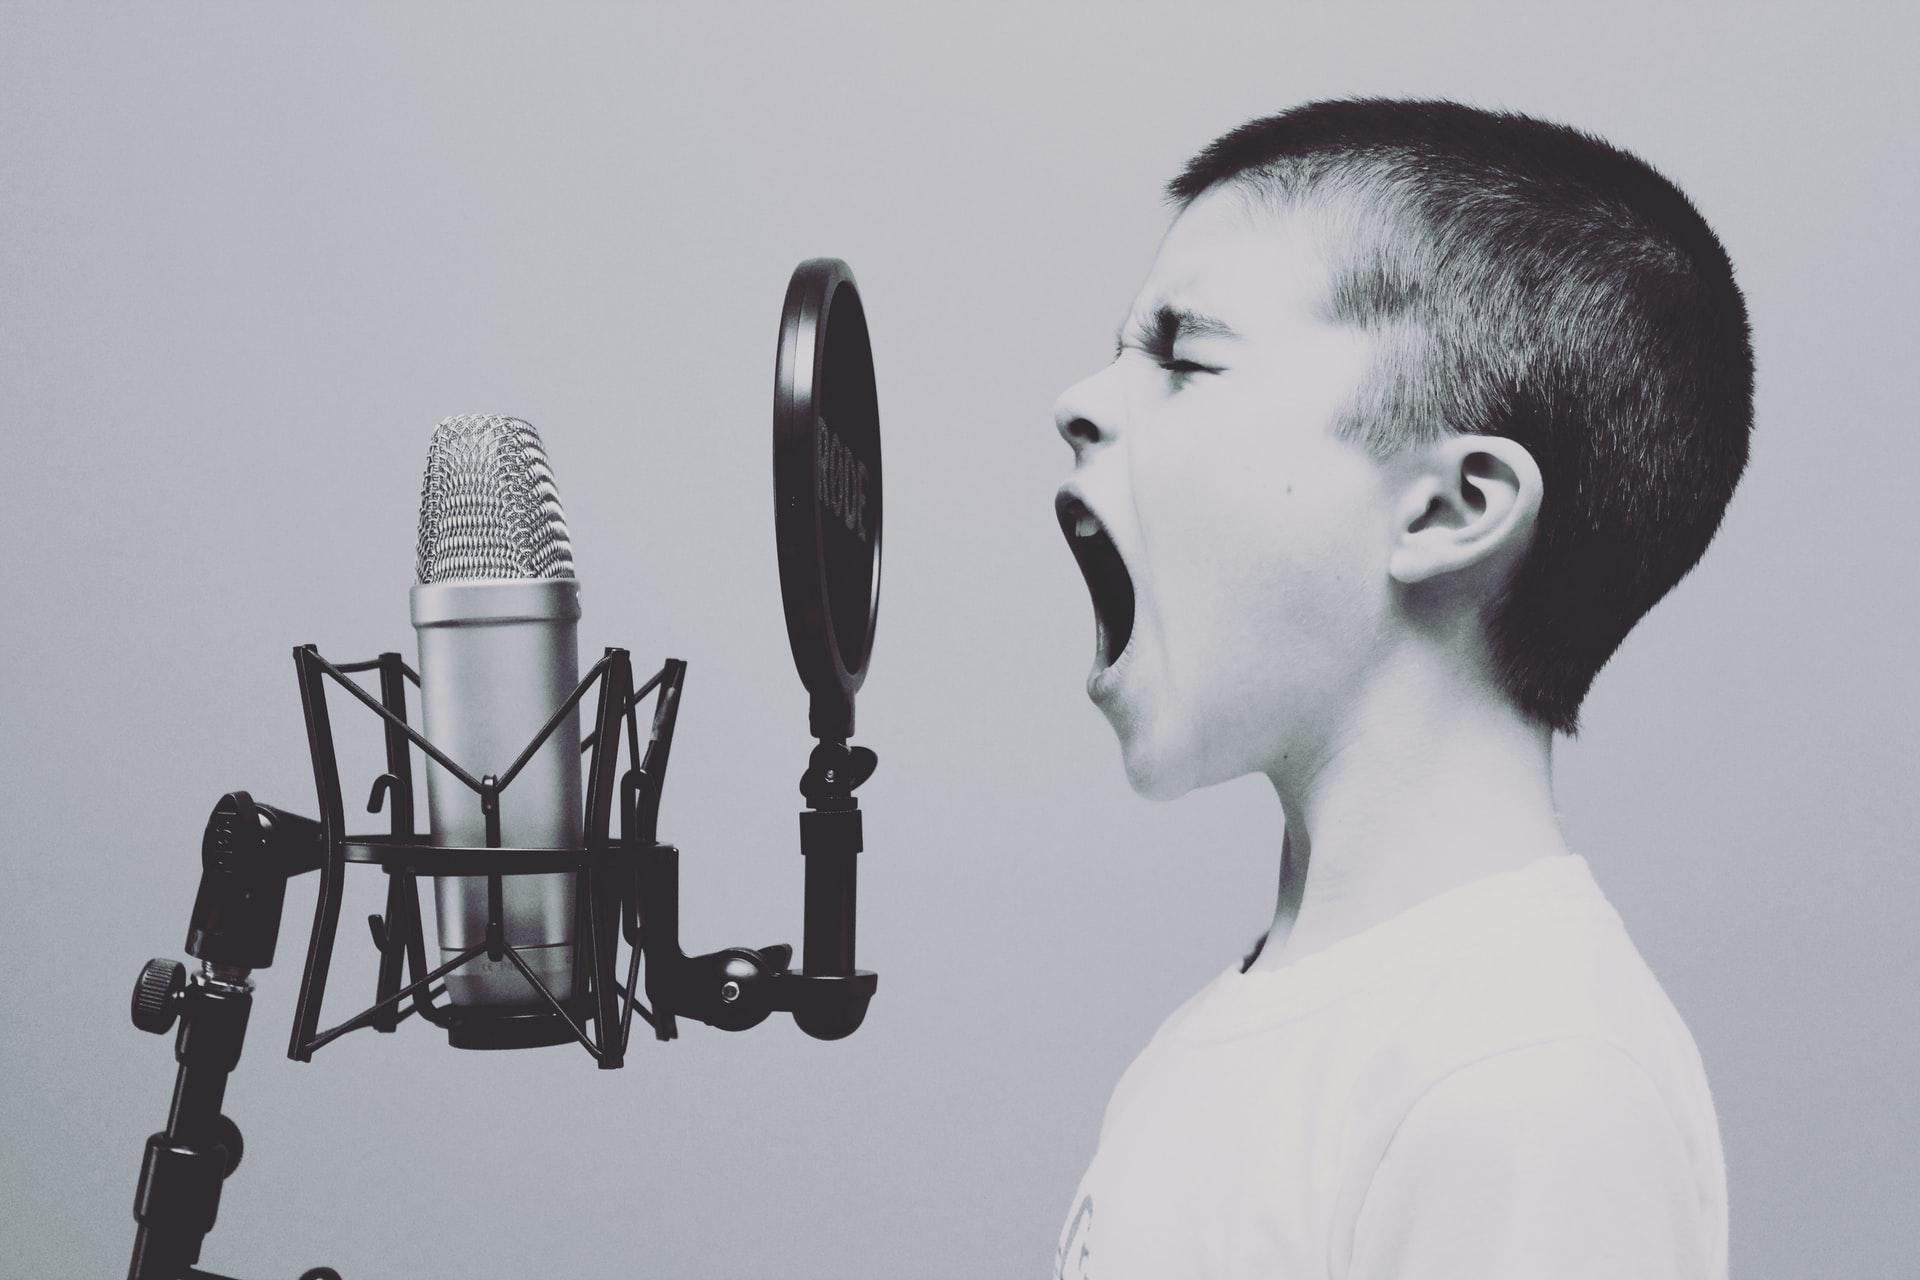 imagem em preto e branco de um menino gritando em um microfone